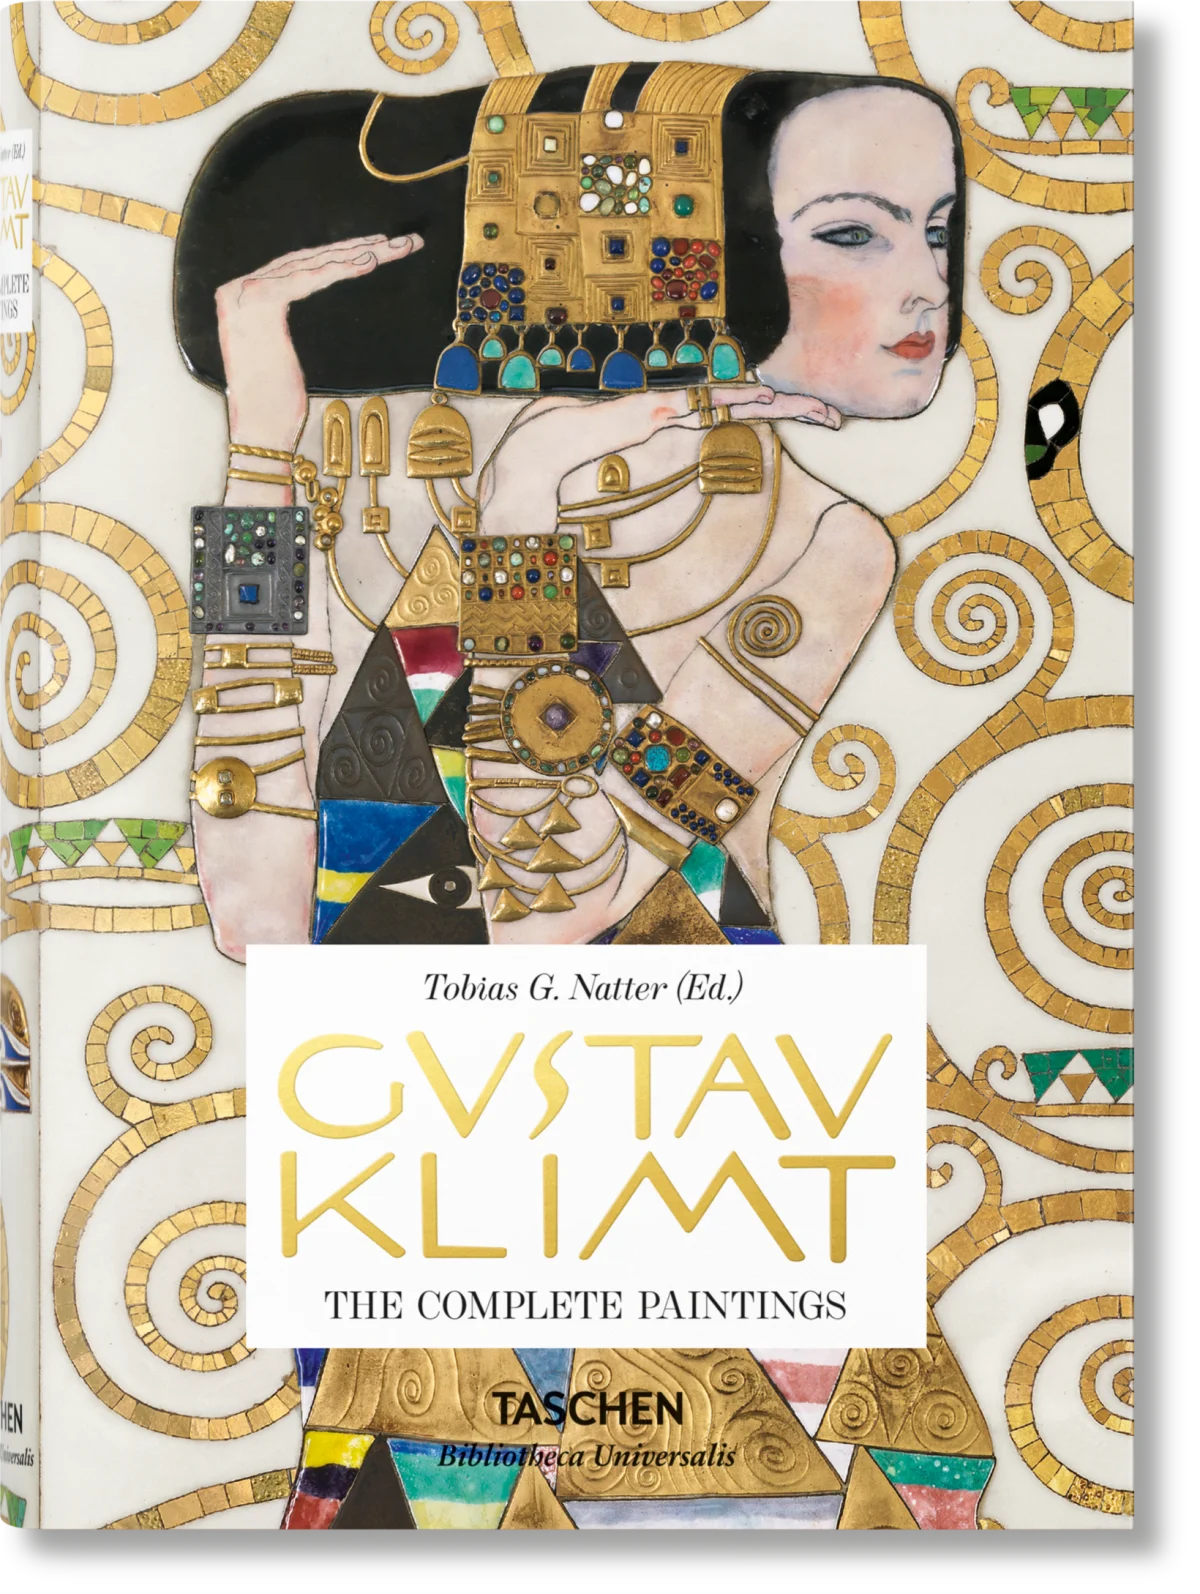 Gustav Klimt - Drawings & Paintings